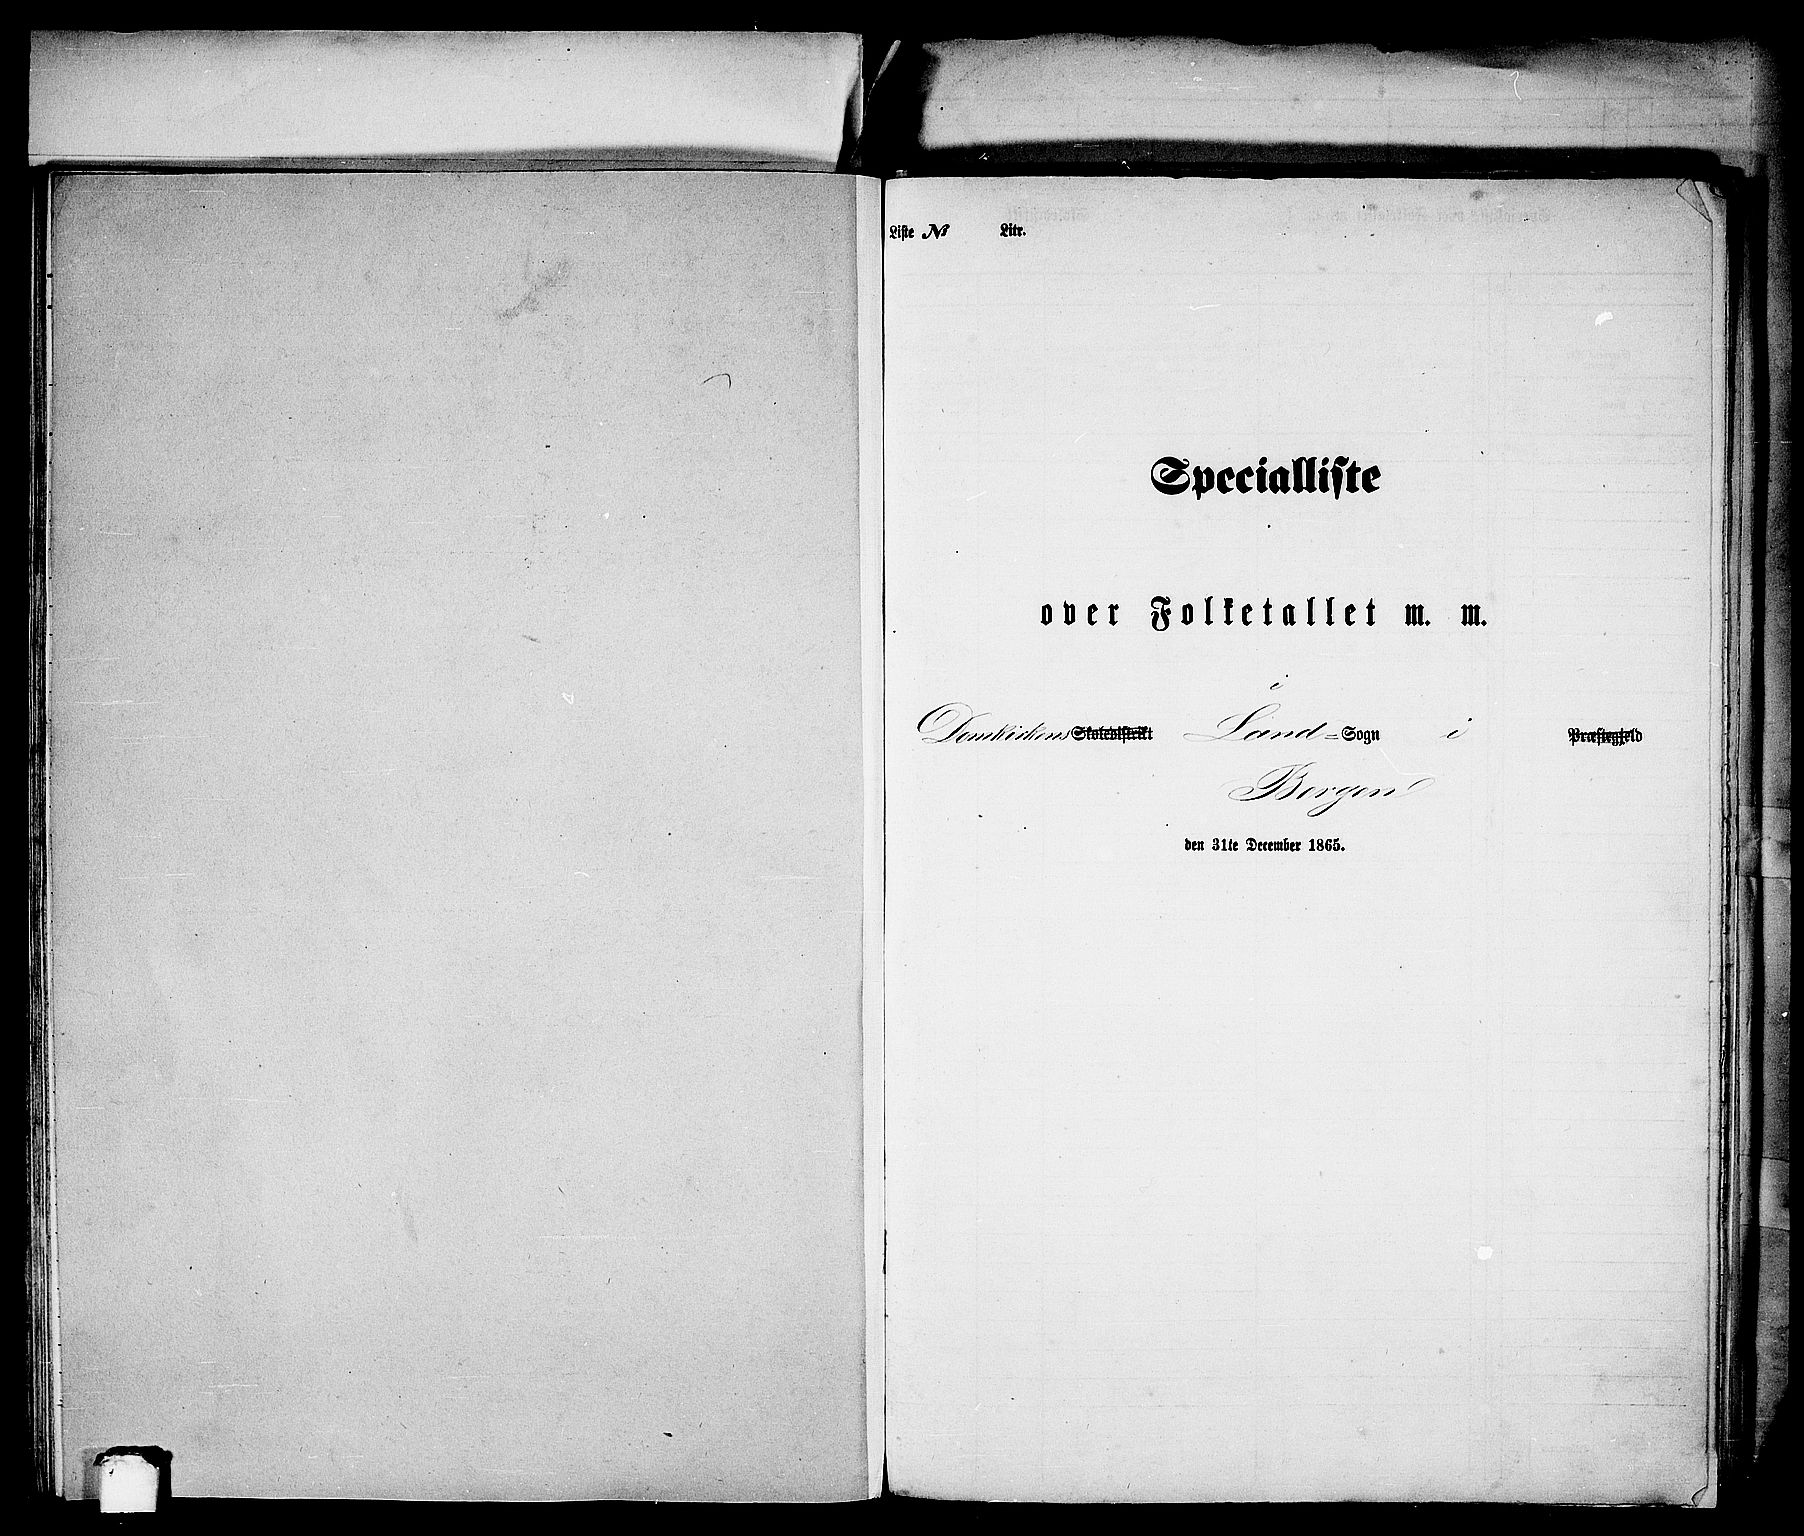 RA, Folketelling 1865 for 1281L Bergen Landdistrikt, Domkirkens landsokn og Korskirkens landsokn, 1865, s. 32